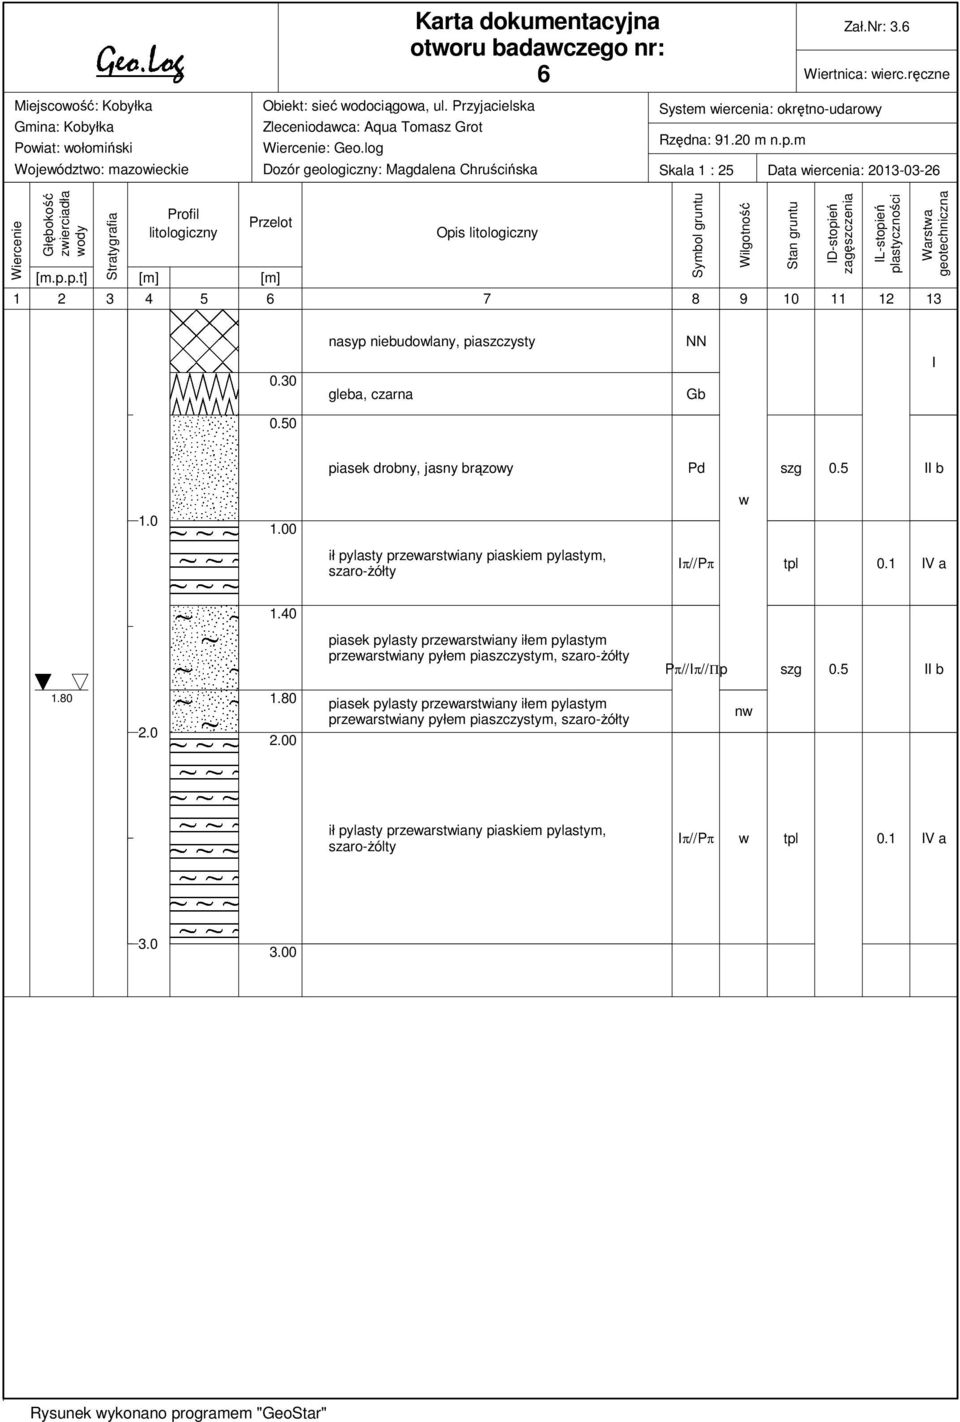 m Skala 1 : 25 Data iercenia: 2013-03-26 Wiercenie Głębokość zierciadła ody Stratygrafia Profil litologiczny Przelot [m.p.